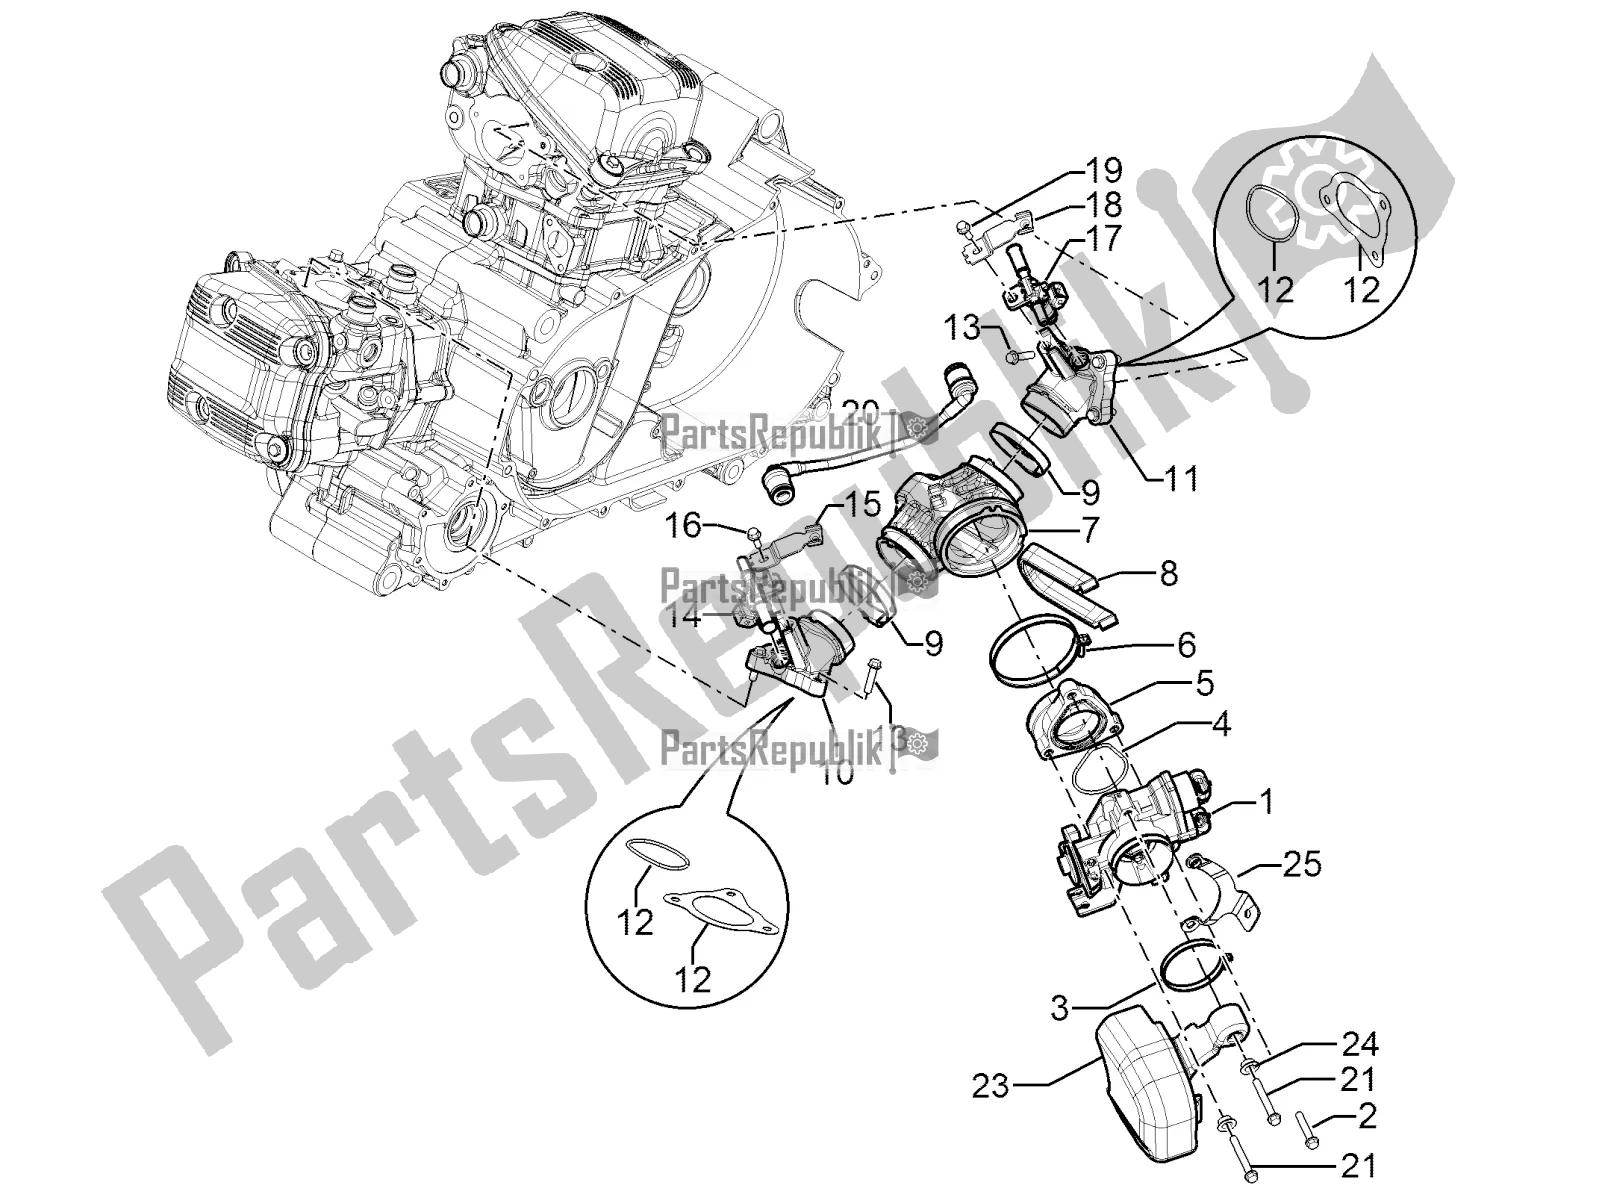 Toutes les pièces pour le Throttle Body - Injector - Induction Joint du Aprilia SRV 850 2016